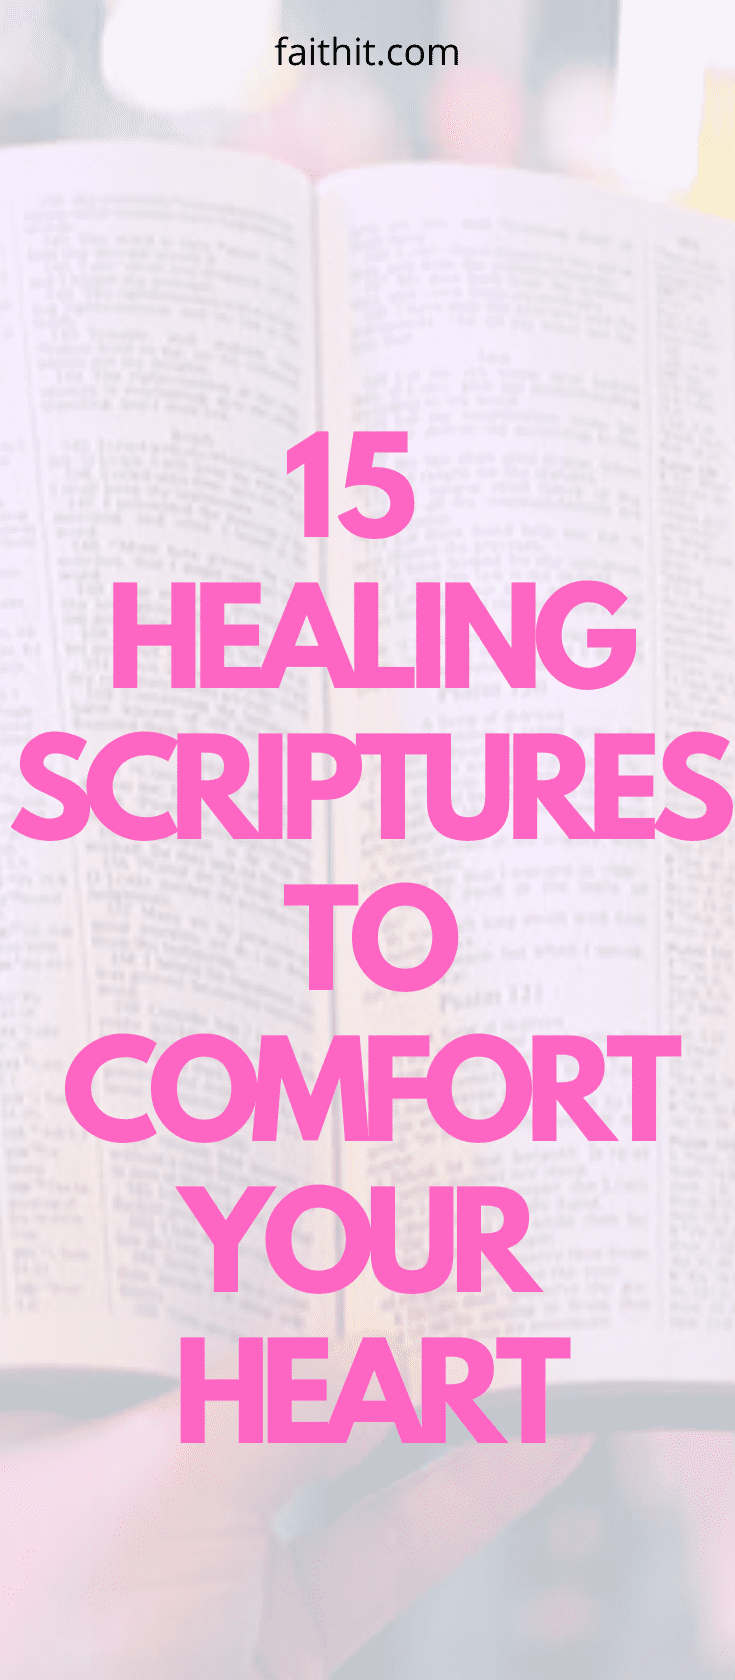 healing scriptures